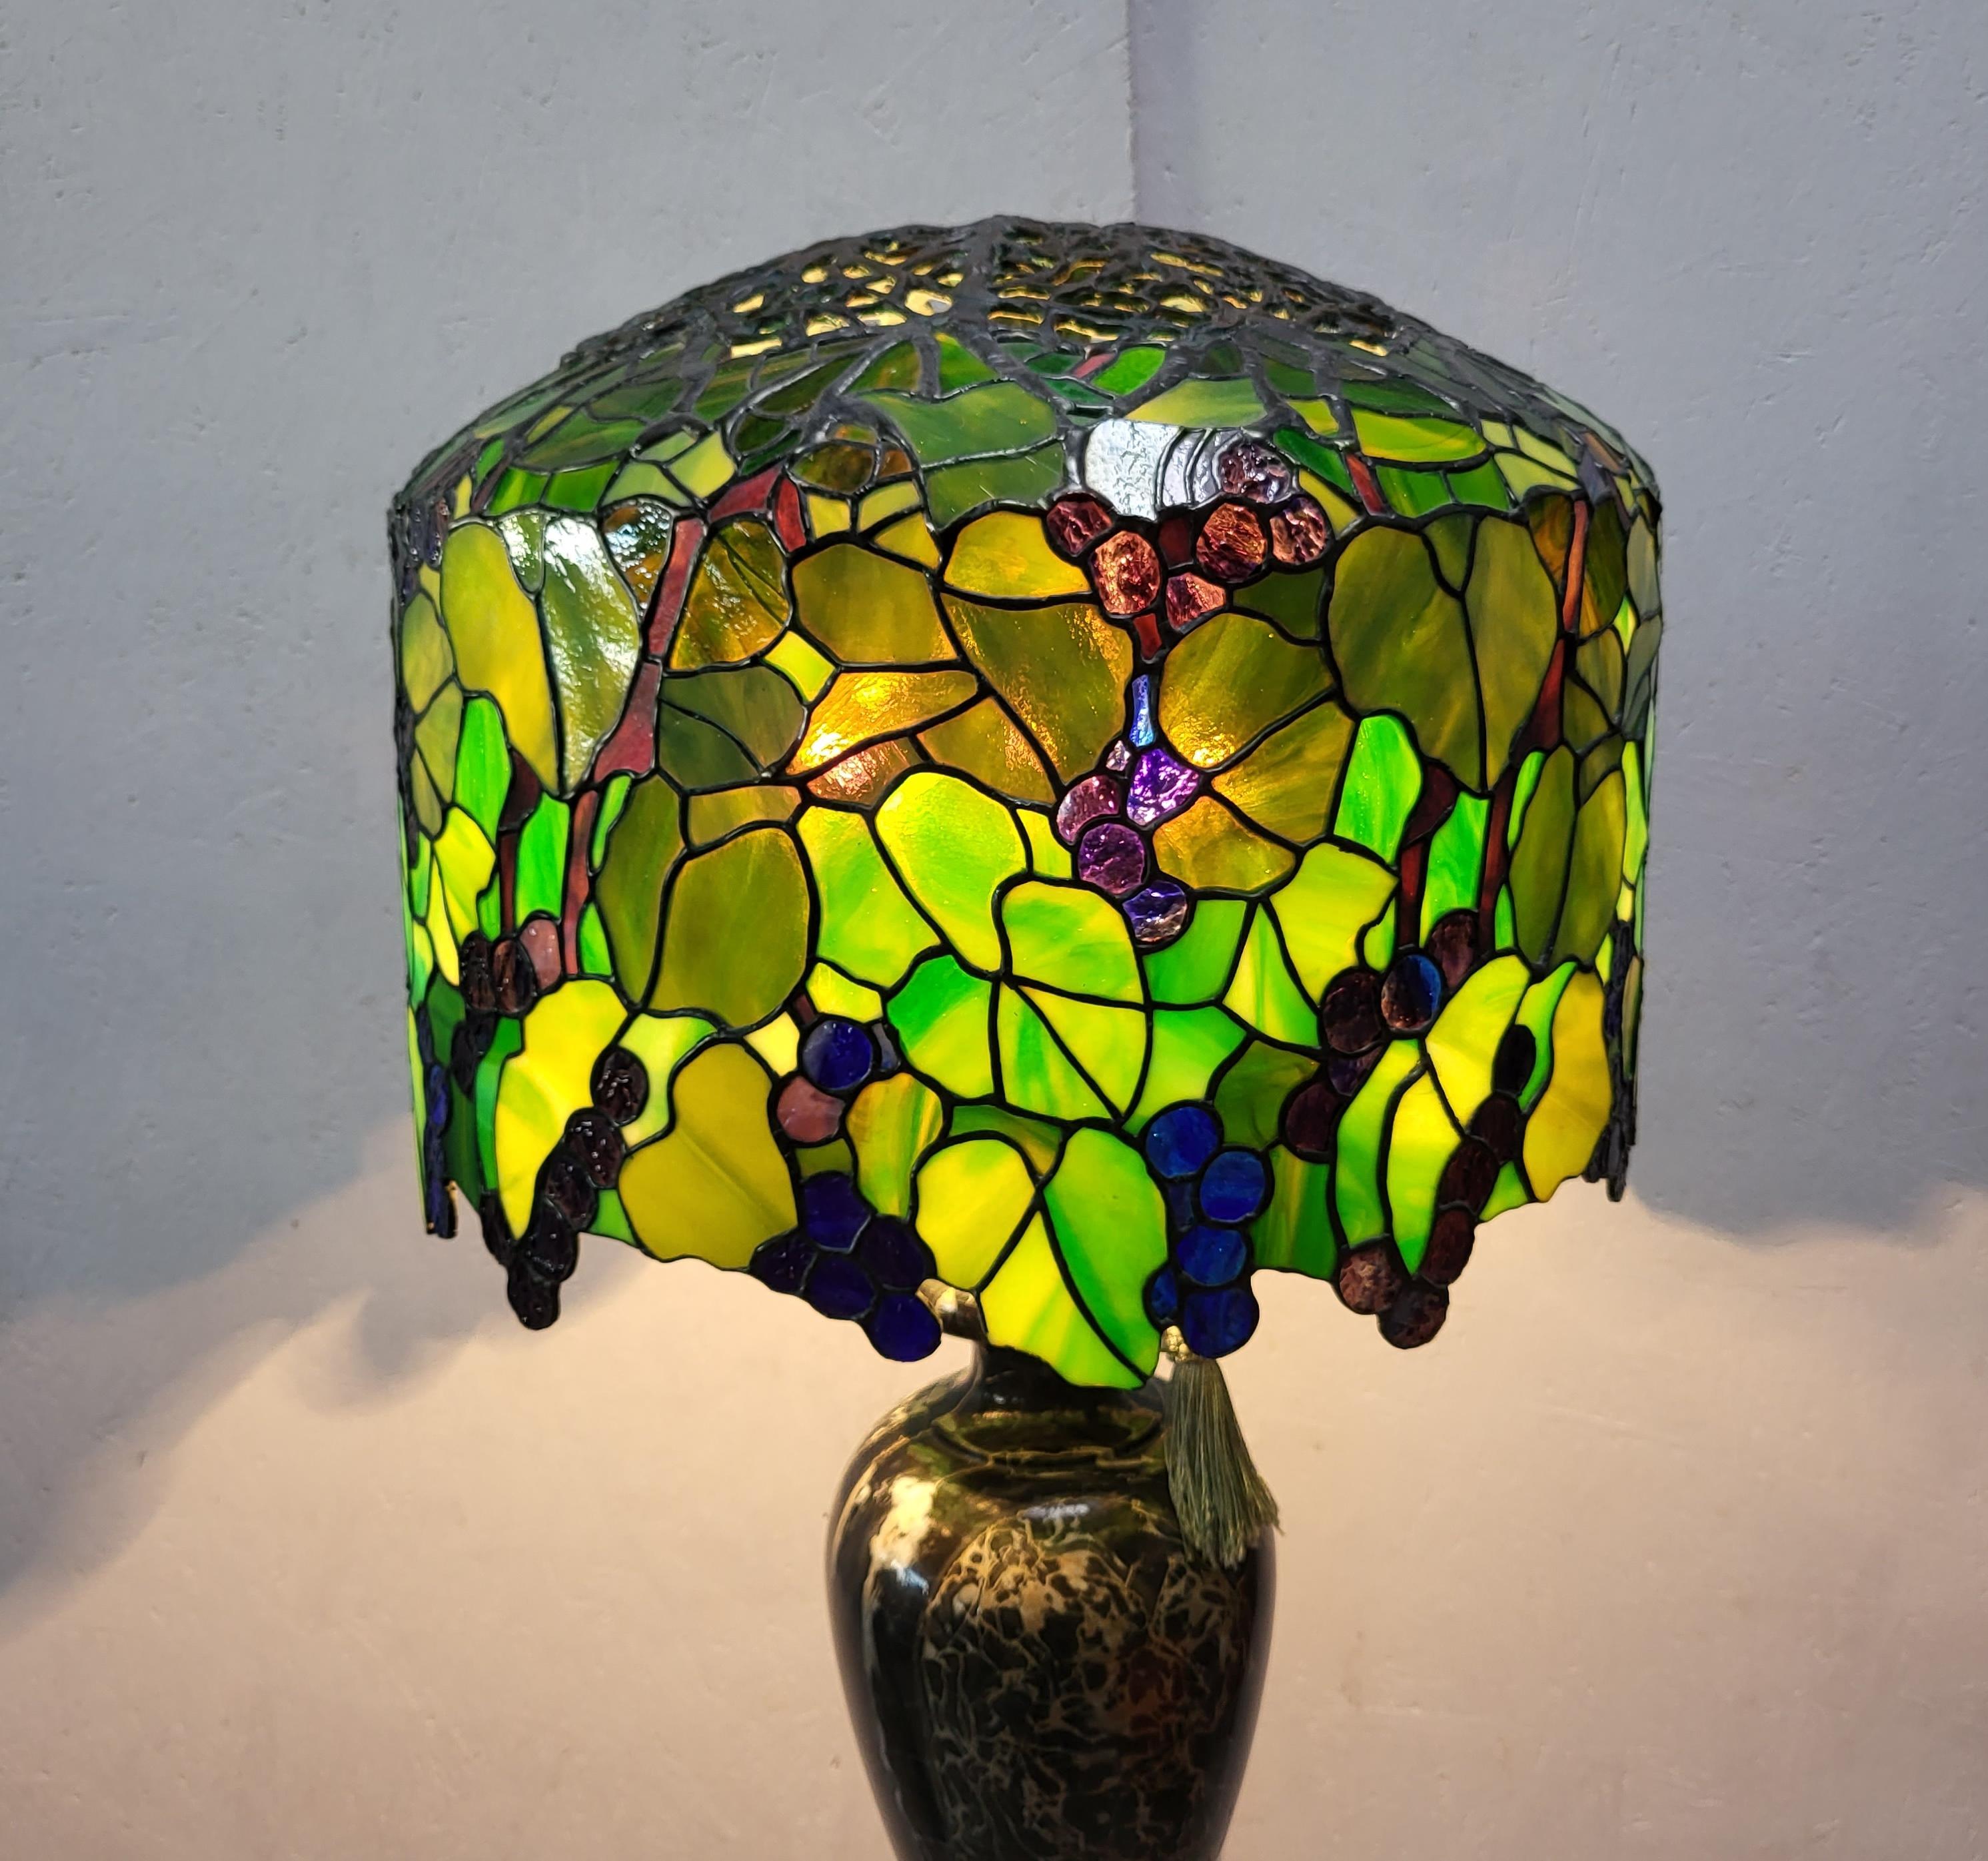 Stupéfiante et étonnante lampe à la manière des Studios Tiffany. 
Très impressionnante lampe fabriquée à la main avec une magnifique base en marbre Breccia.
 
Très beau travail à la main, verre coloré.

La lampe a une lumière chaude étonnante et est